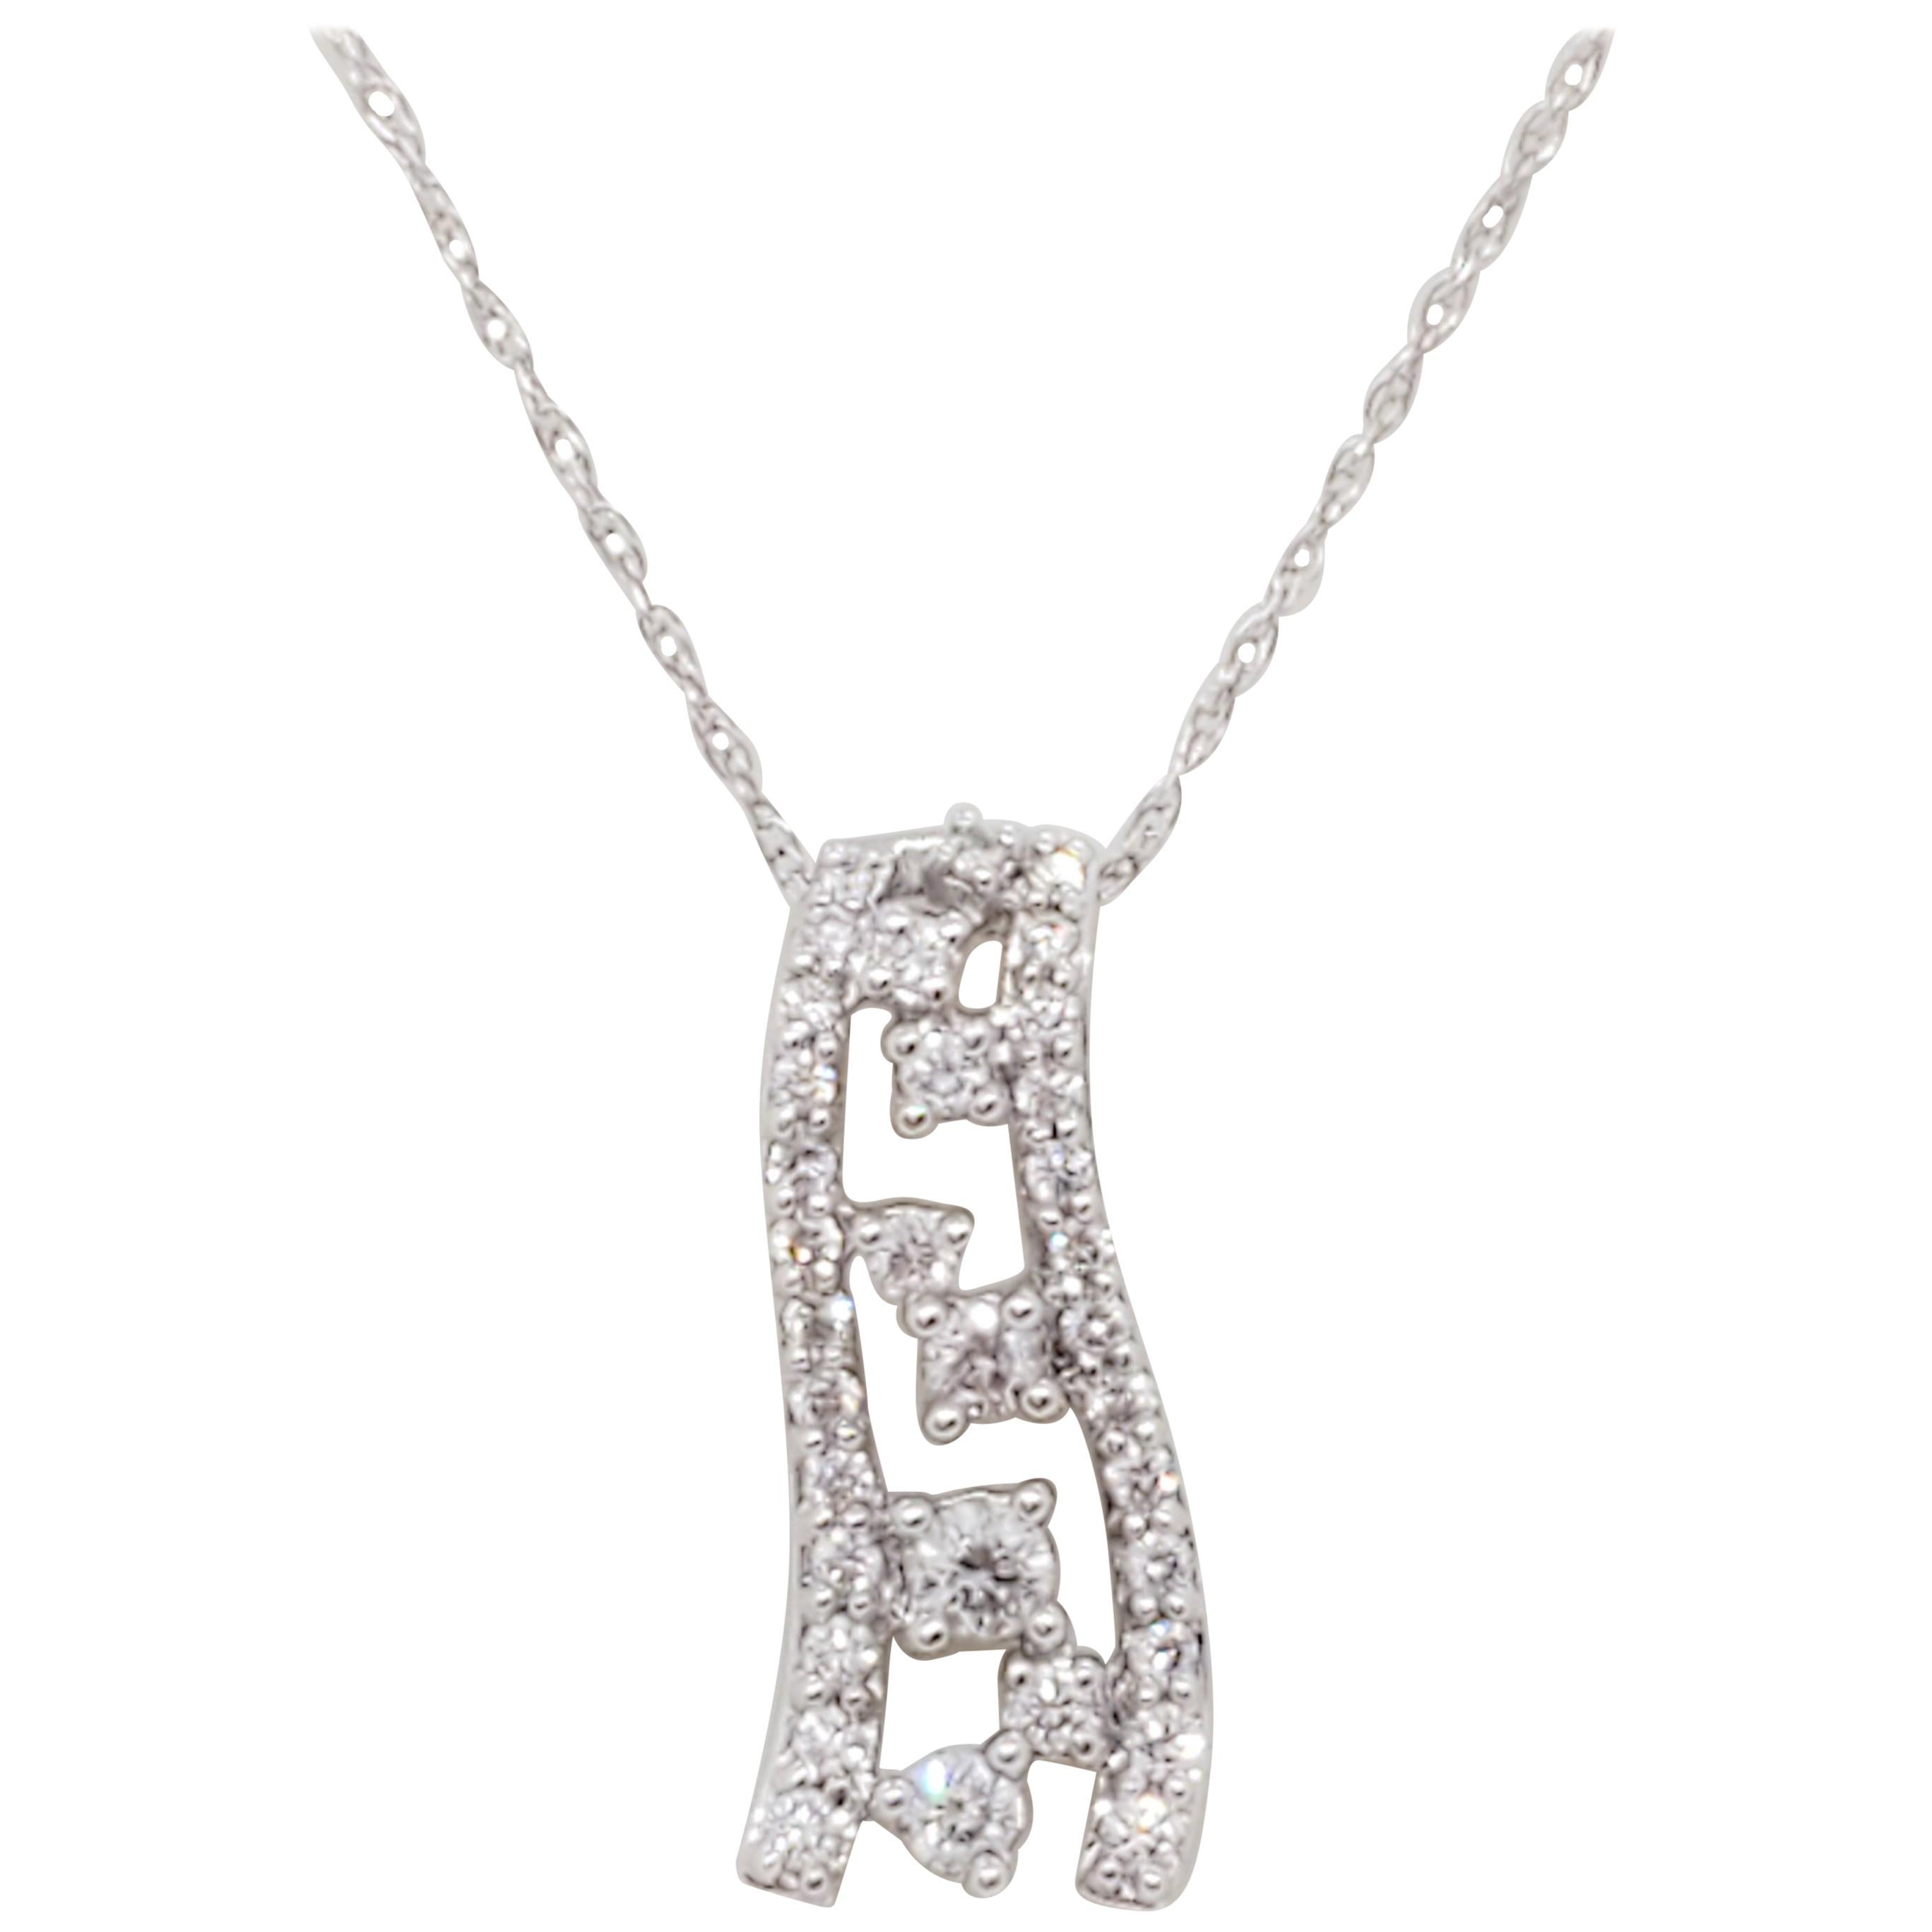 Estate White Diamond Dangle Pendant Necklace in 18k White Gold